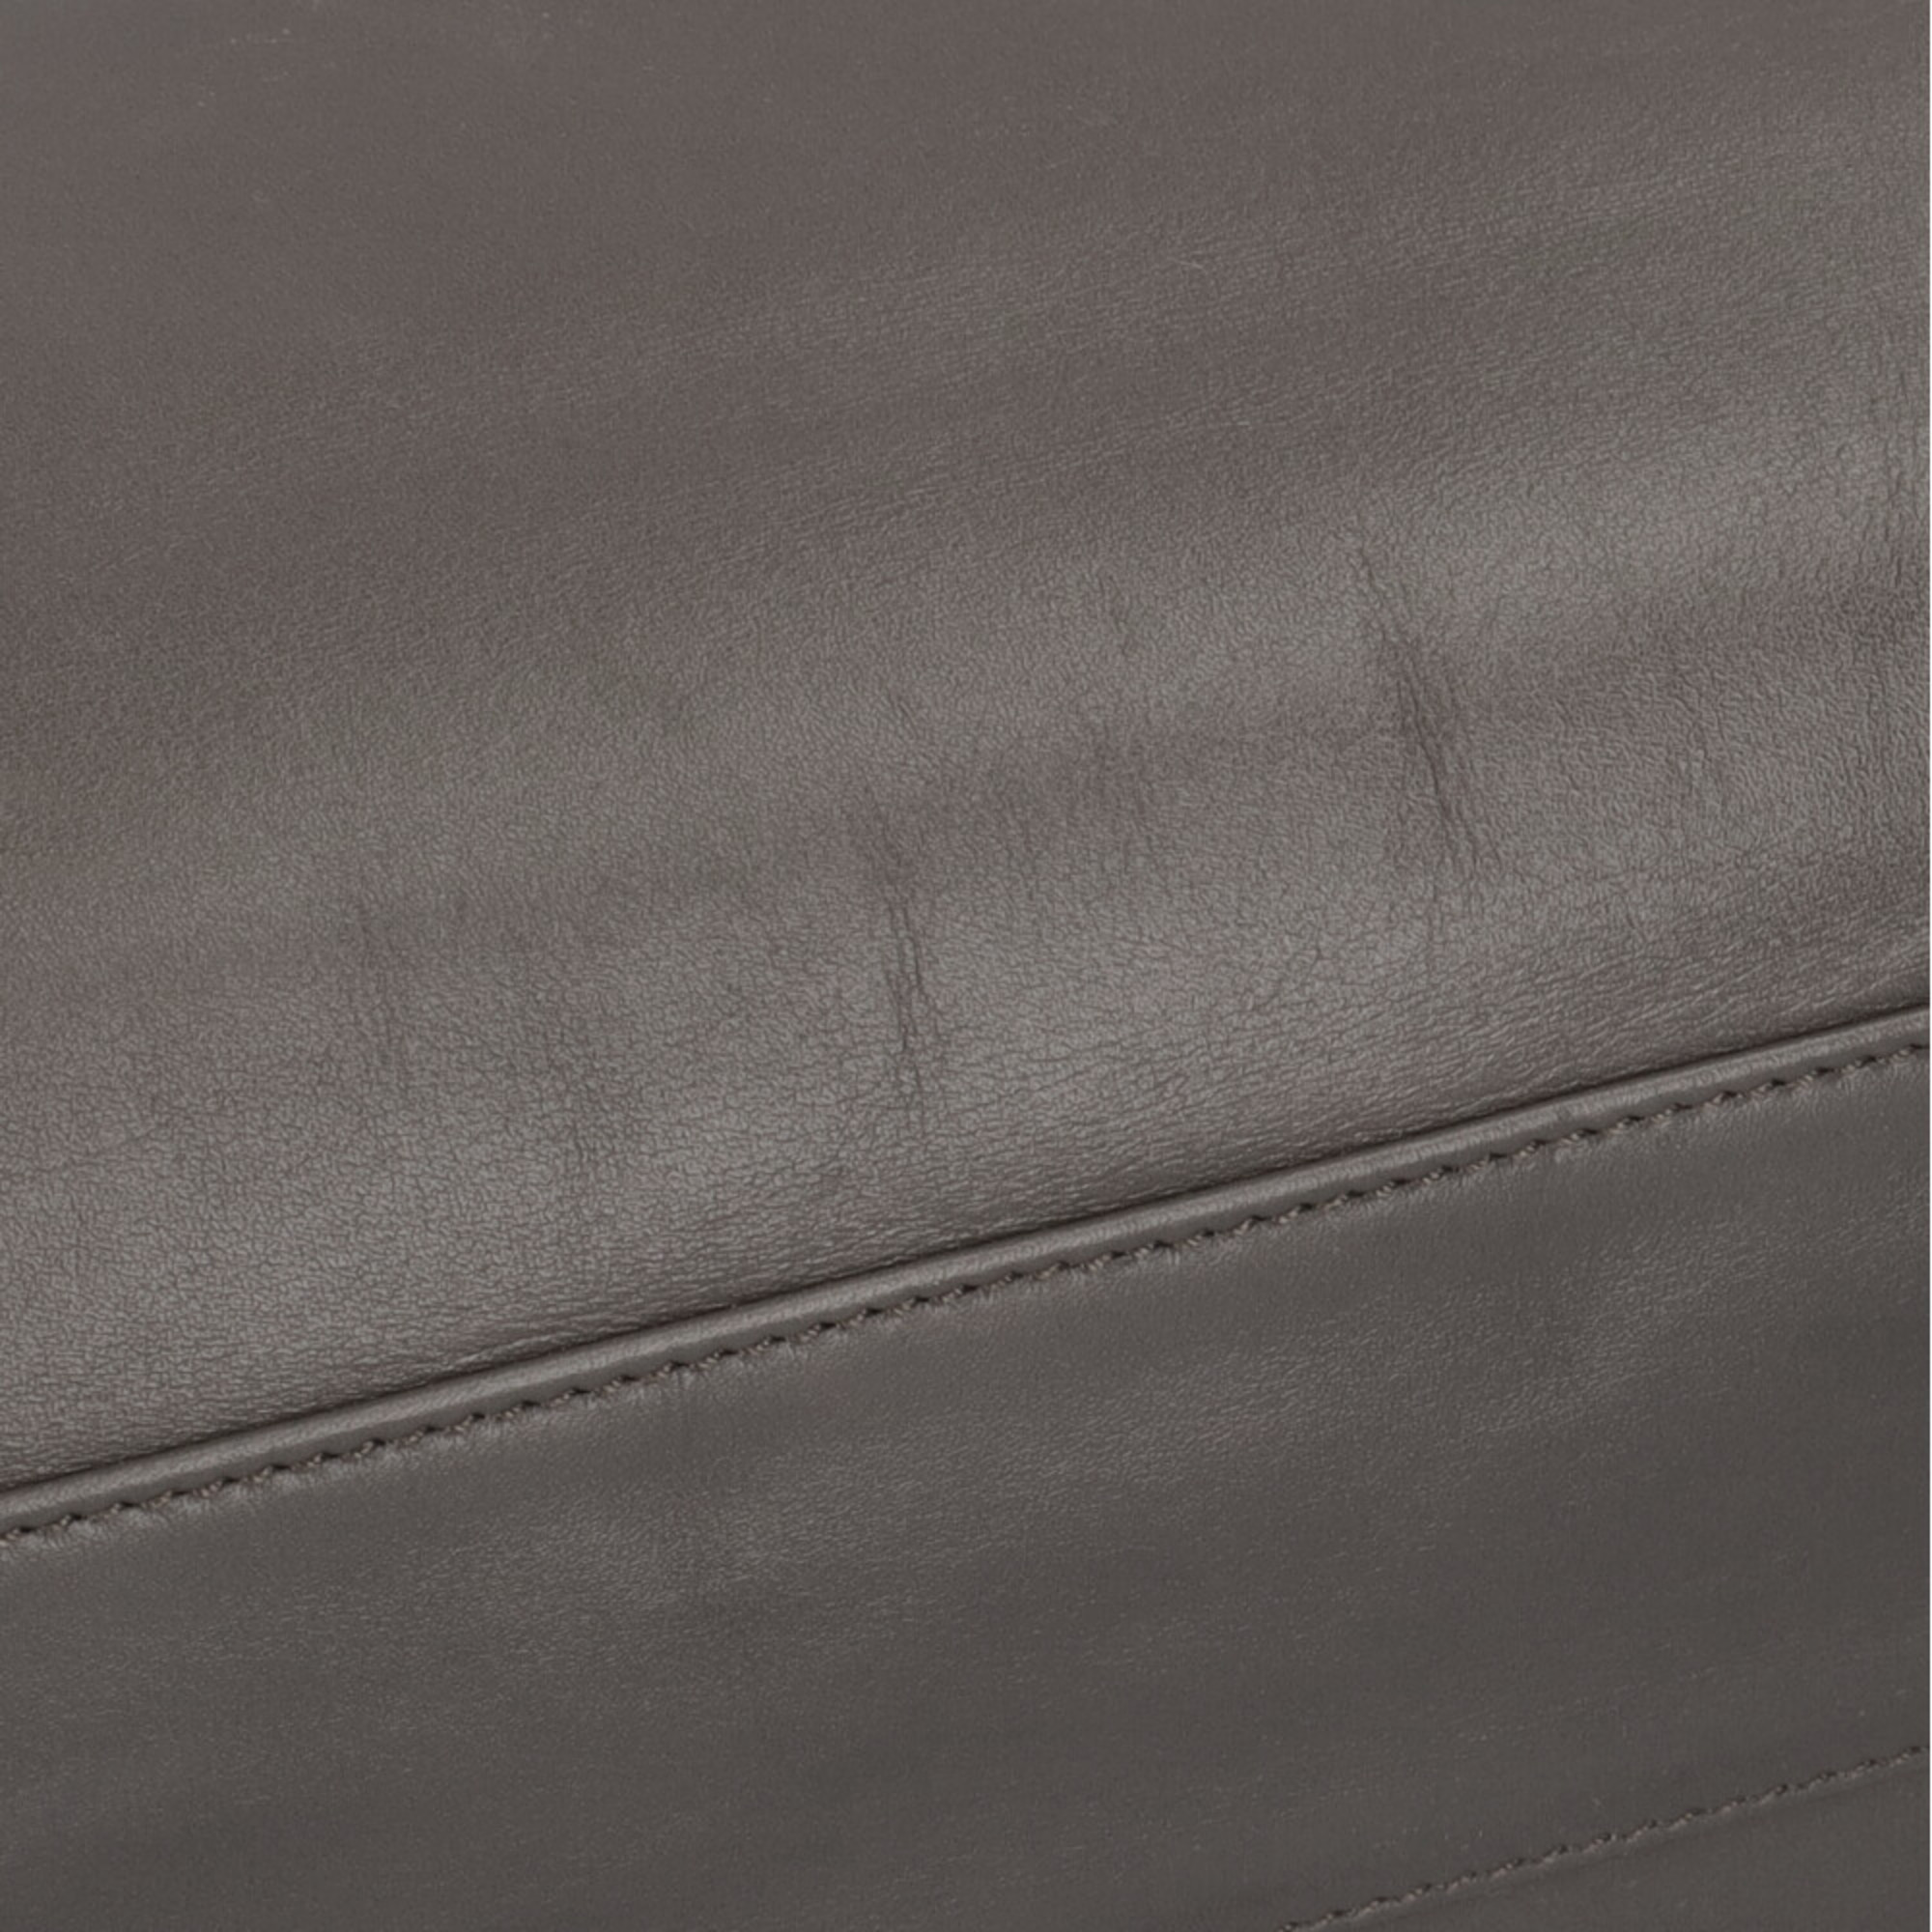 Yves Saint Laurent Saint Laurent Paris SAINT LAURENT PARIS tote bag leather gray unisex